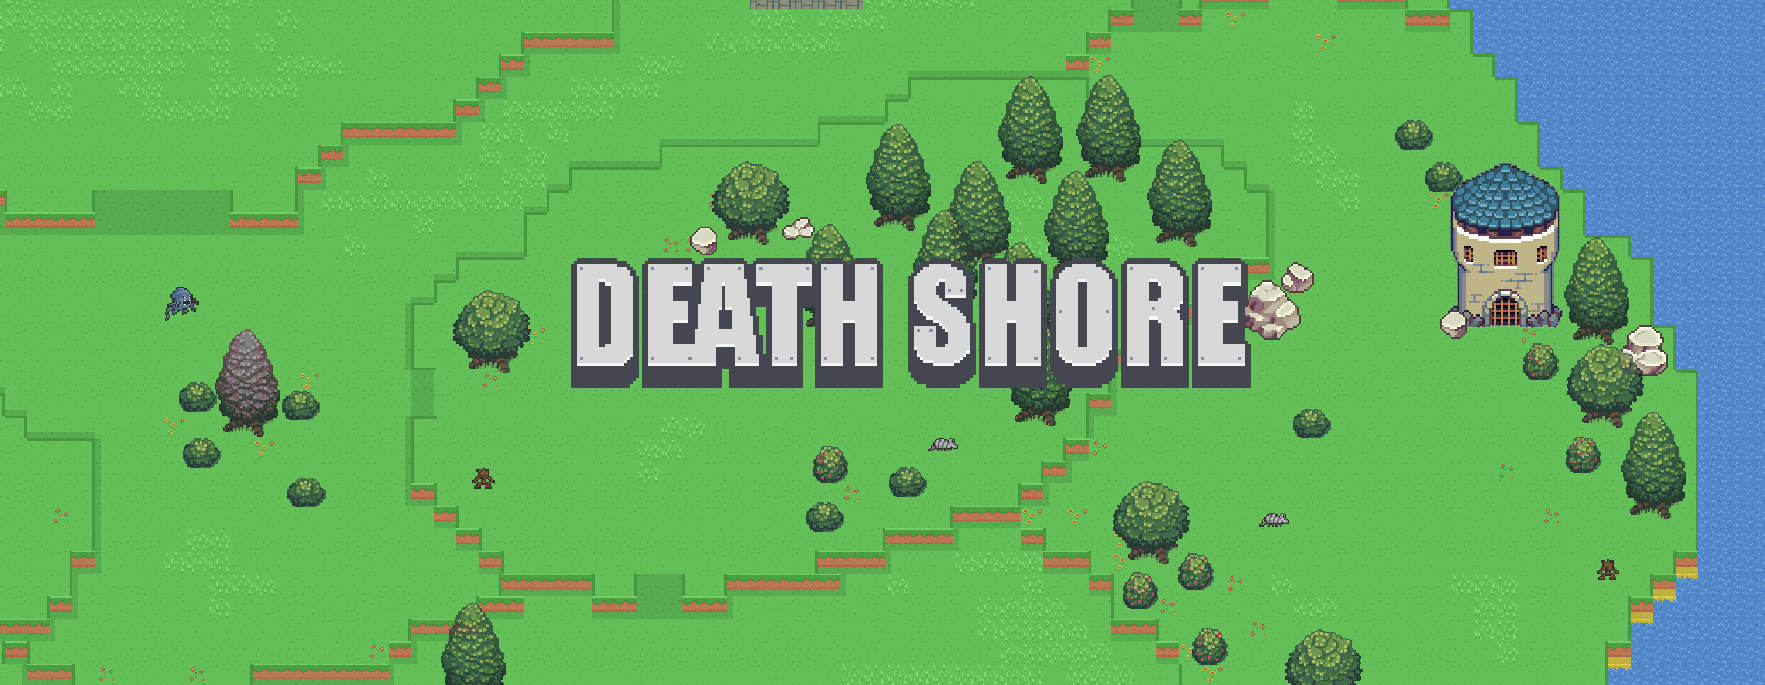 Death Shore